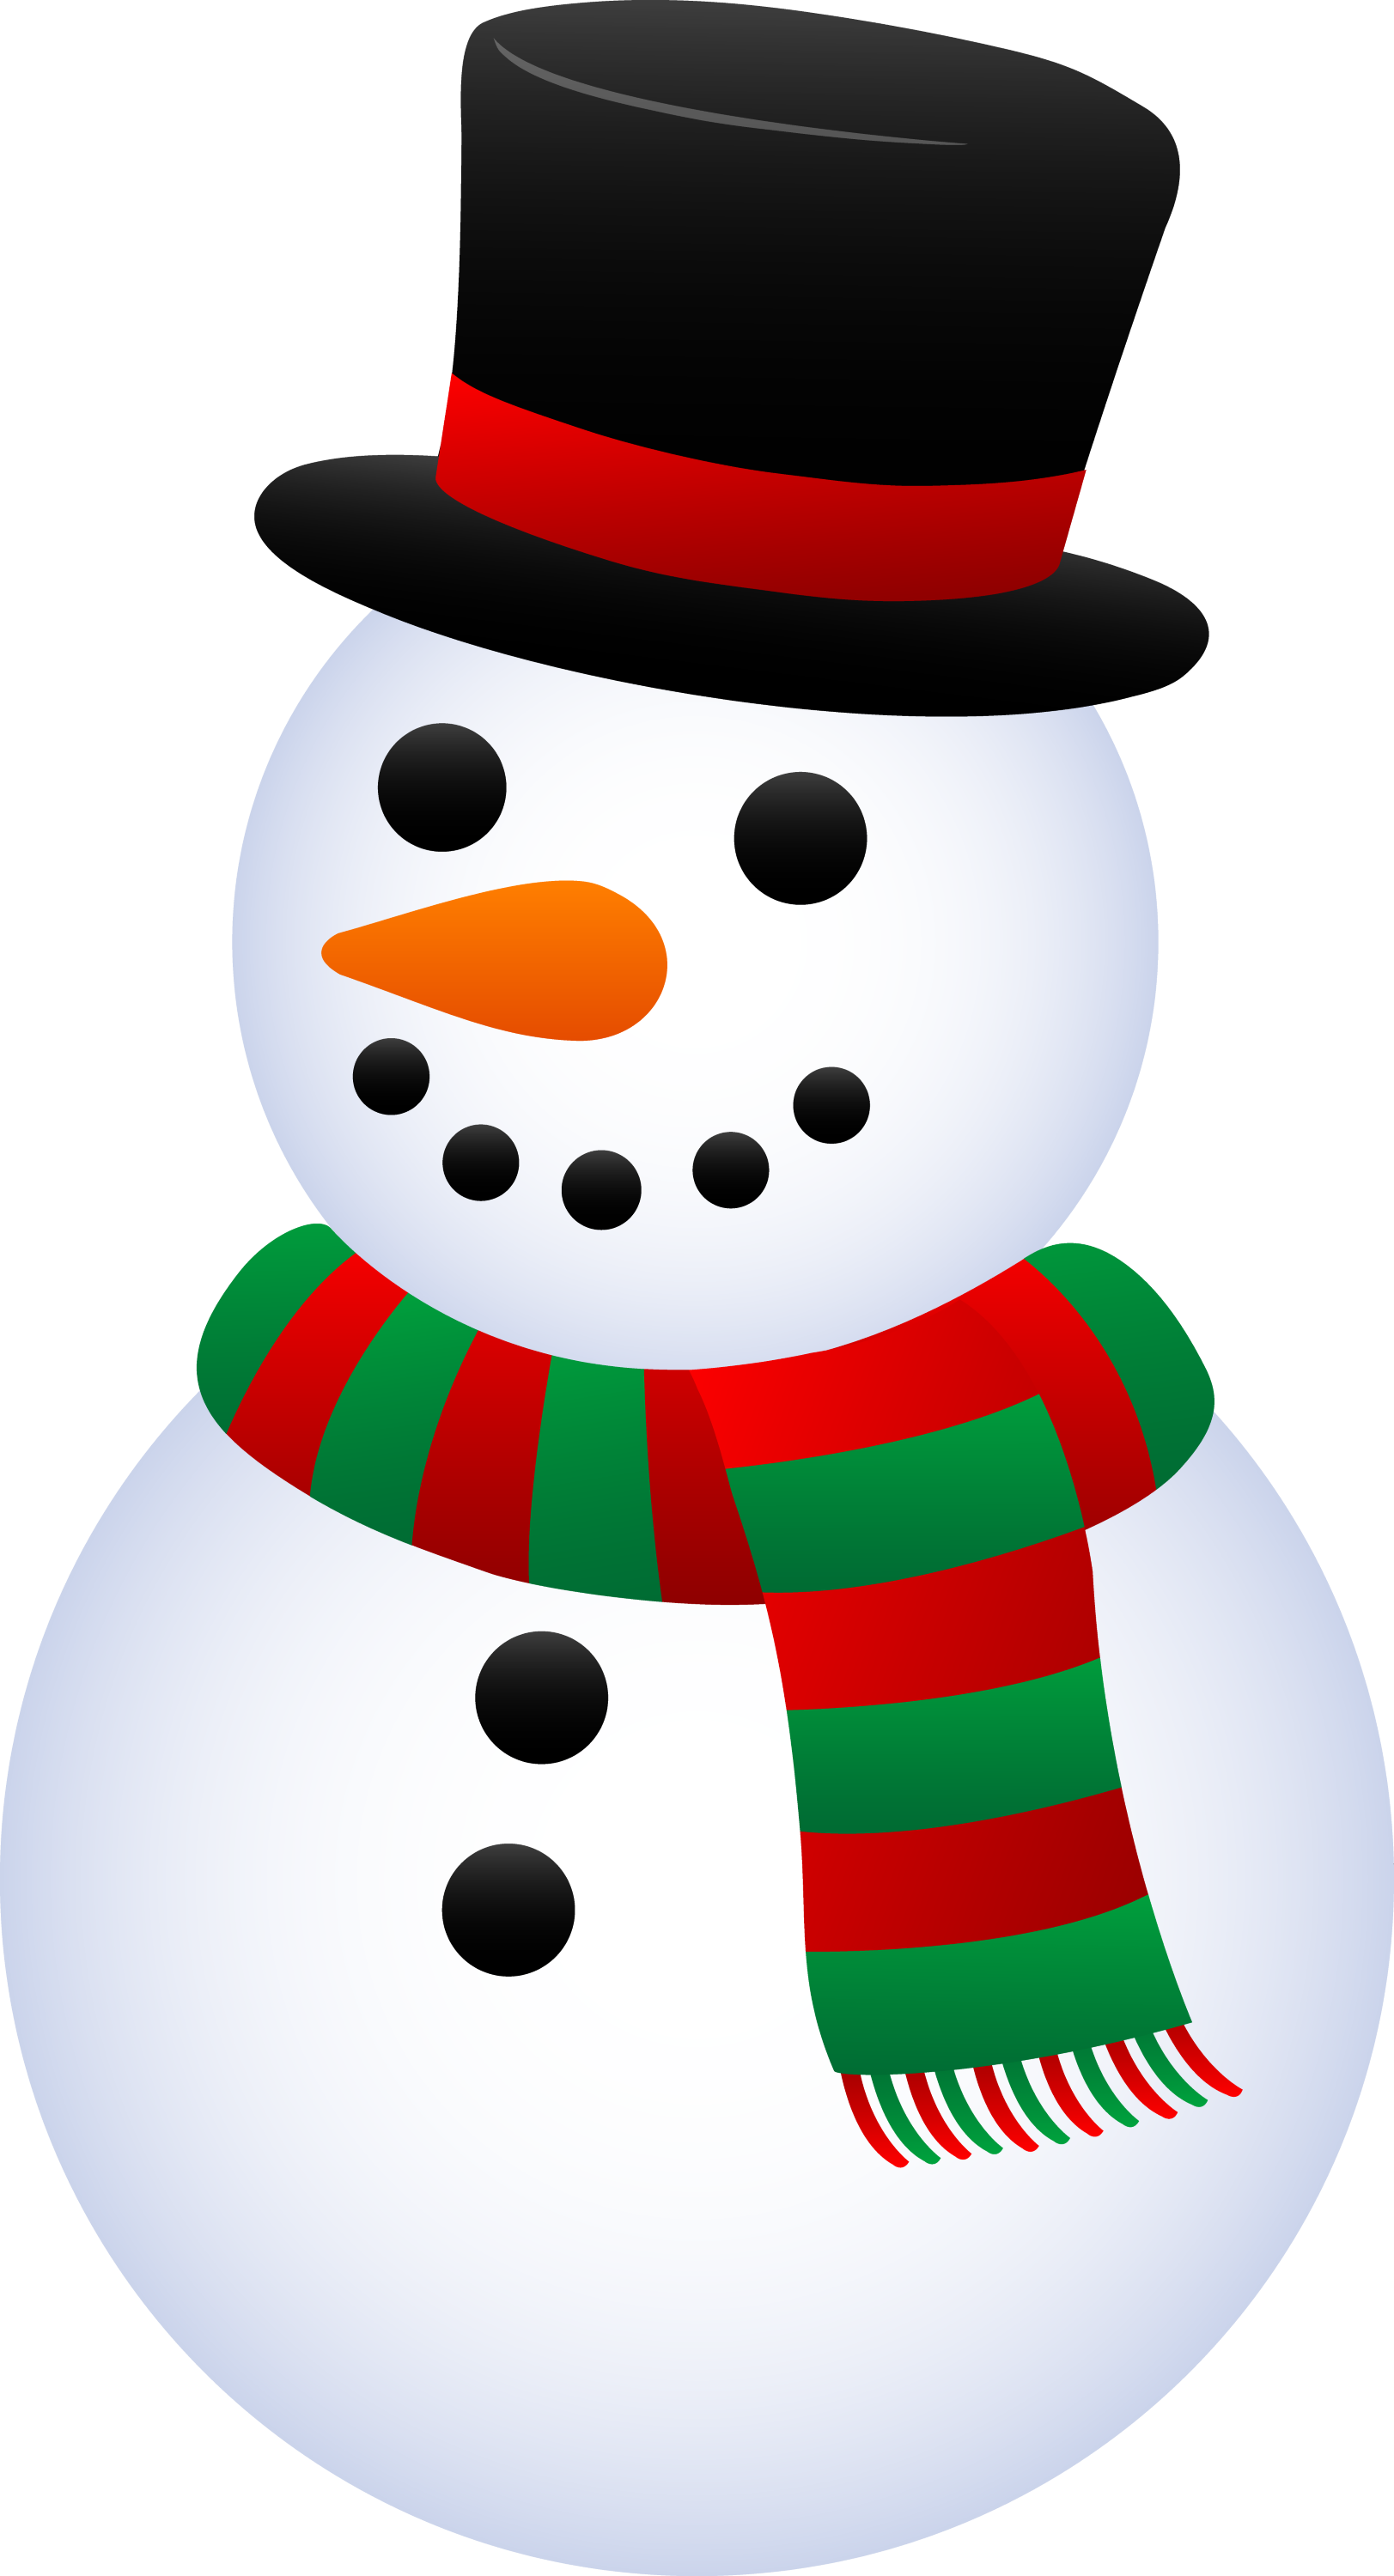 free snowman clipart - photo #42